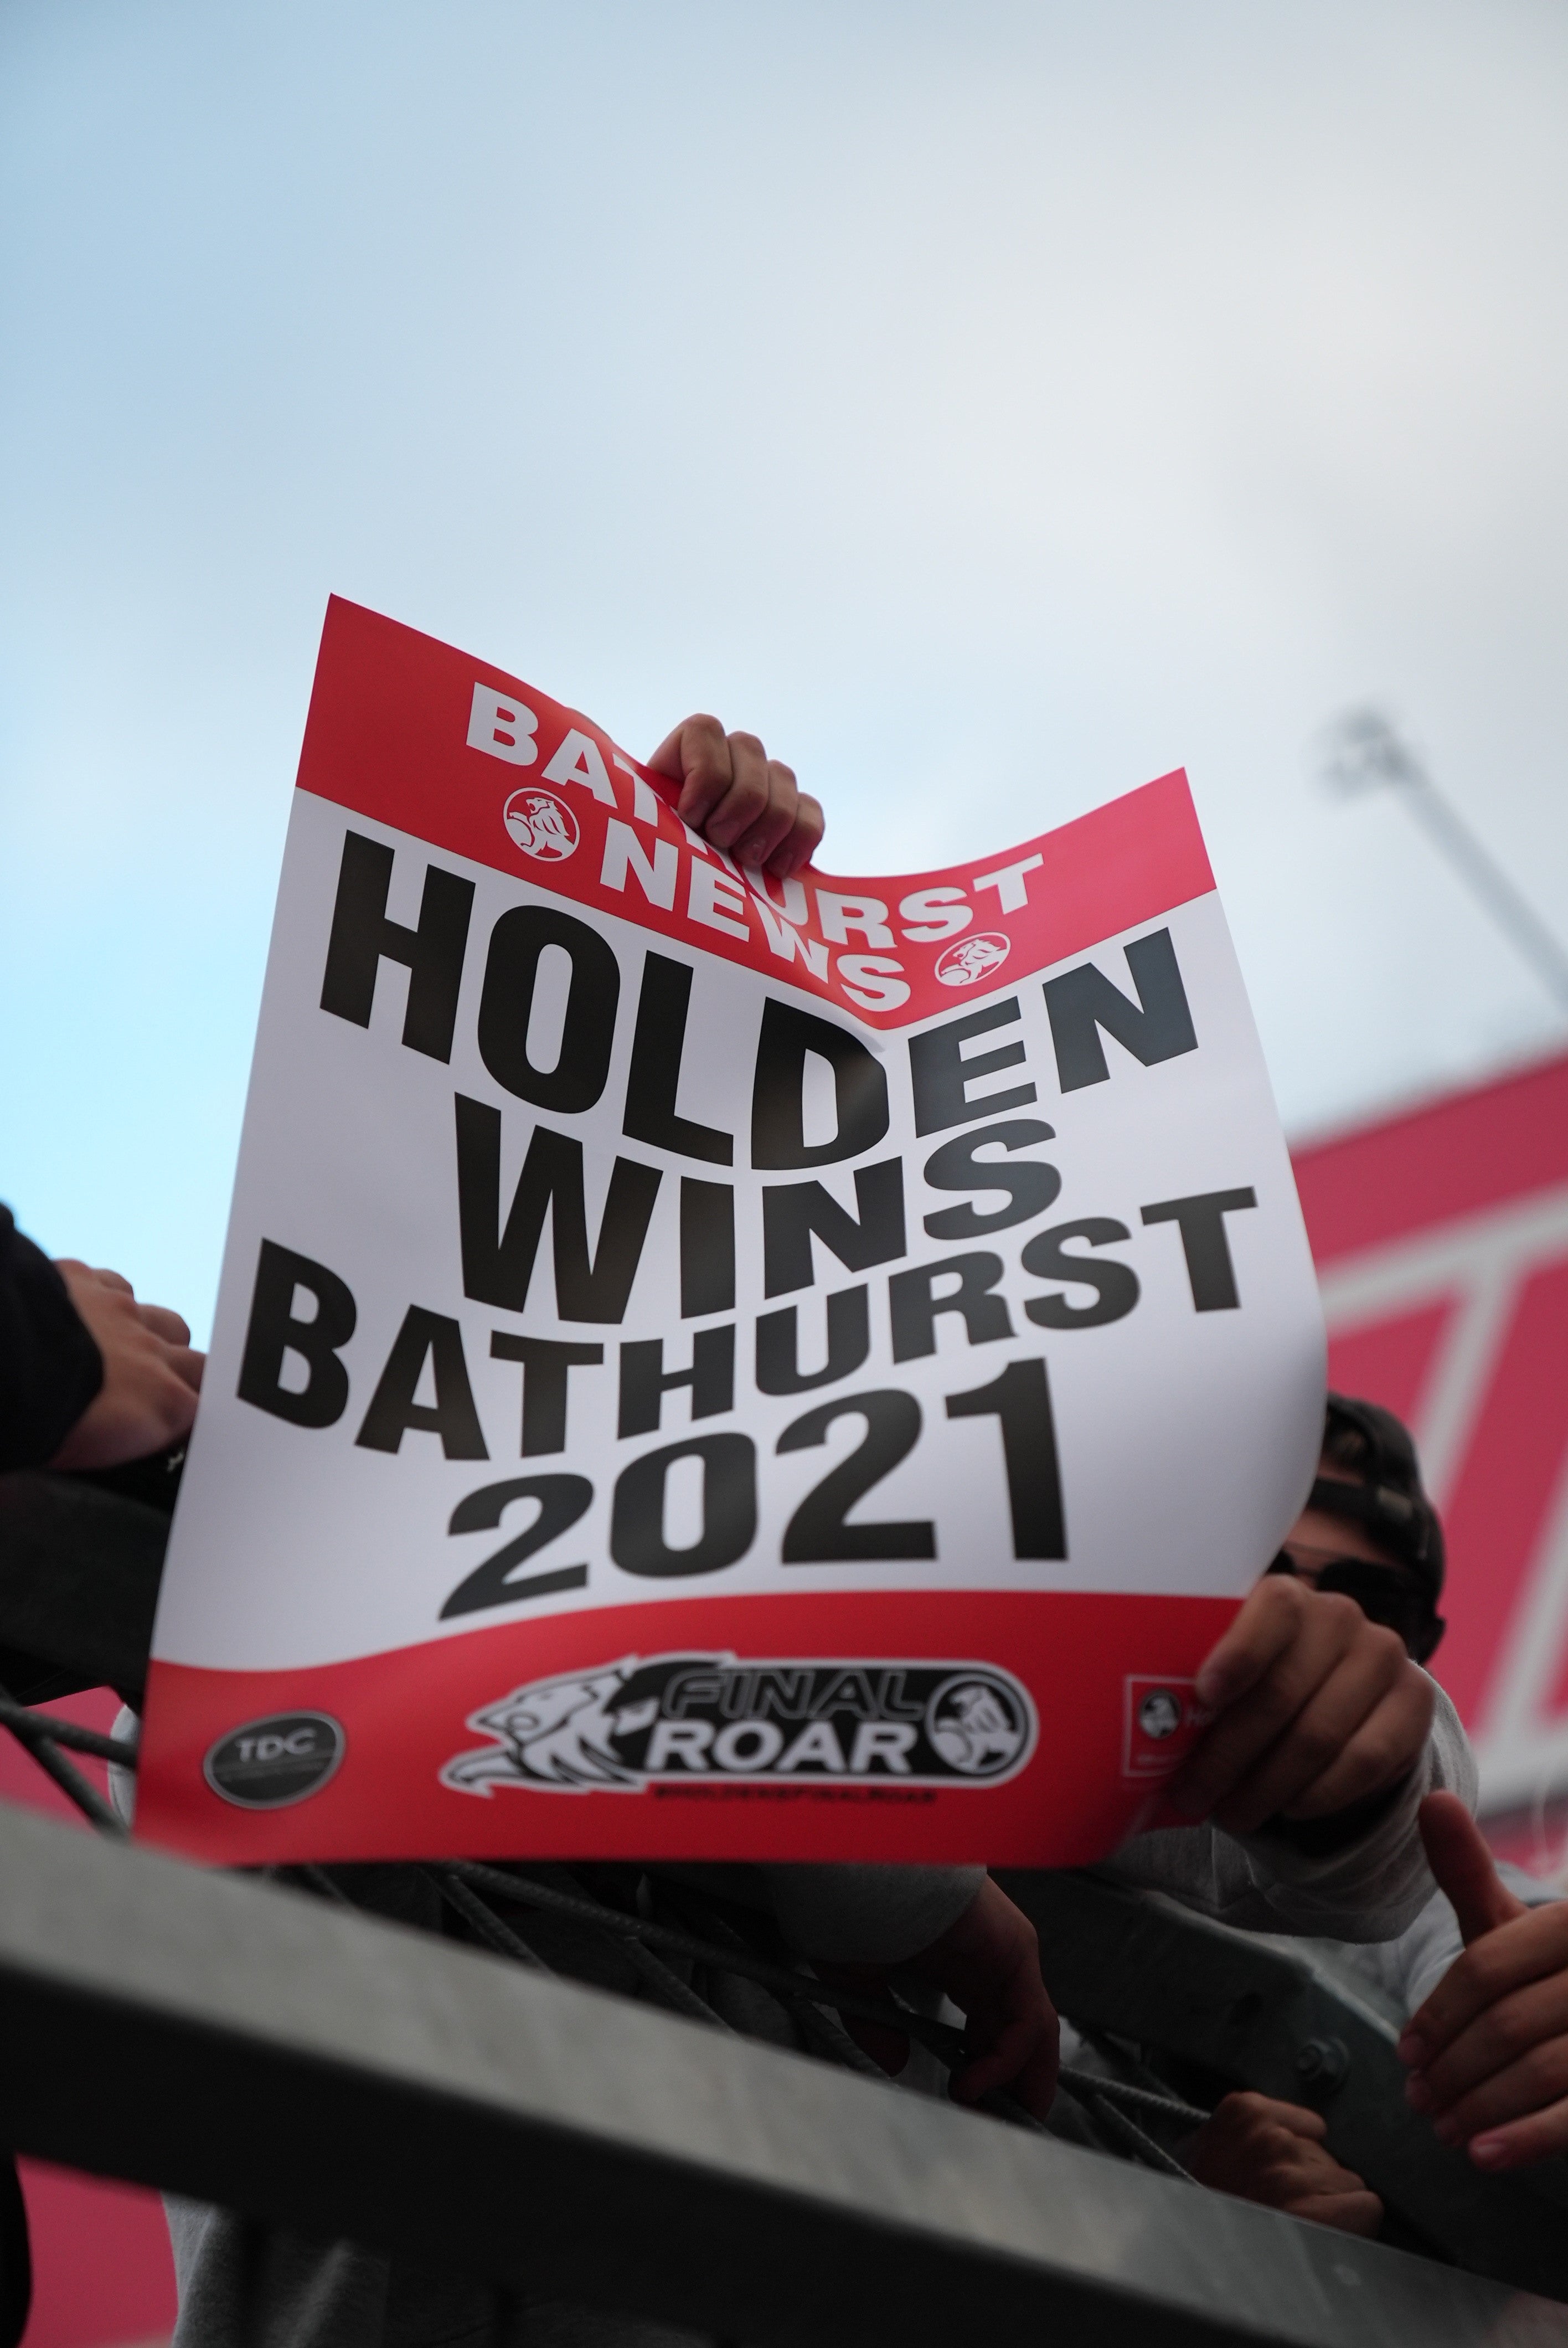 X2 Holden Wins Bathurst Poster (2021)